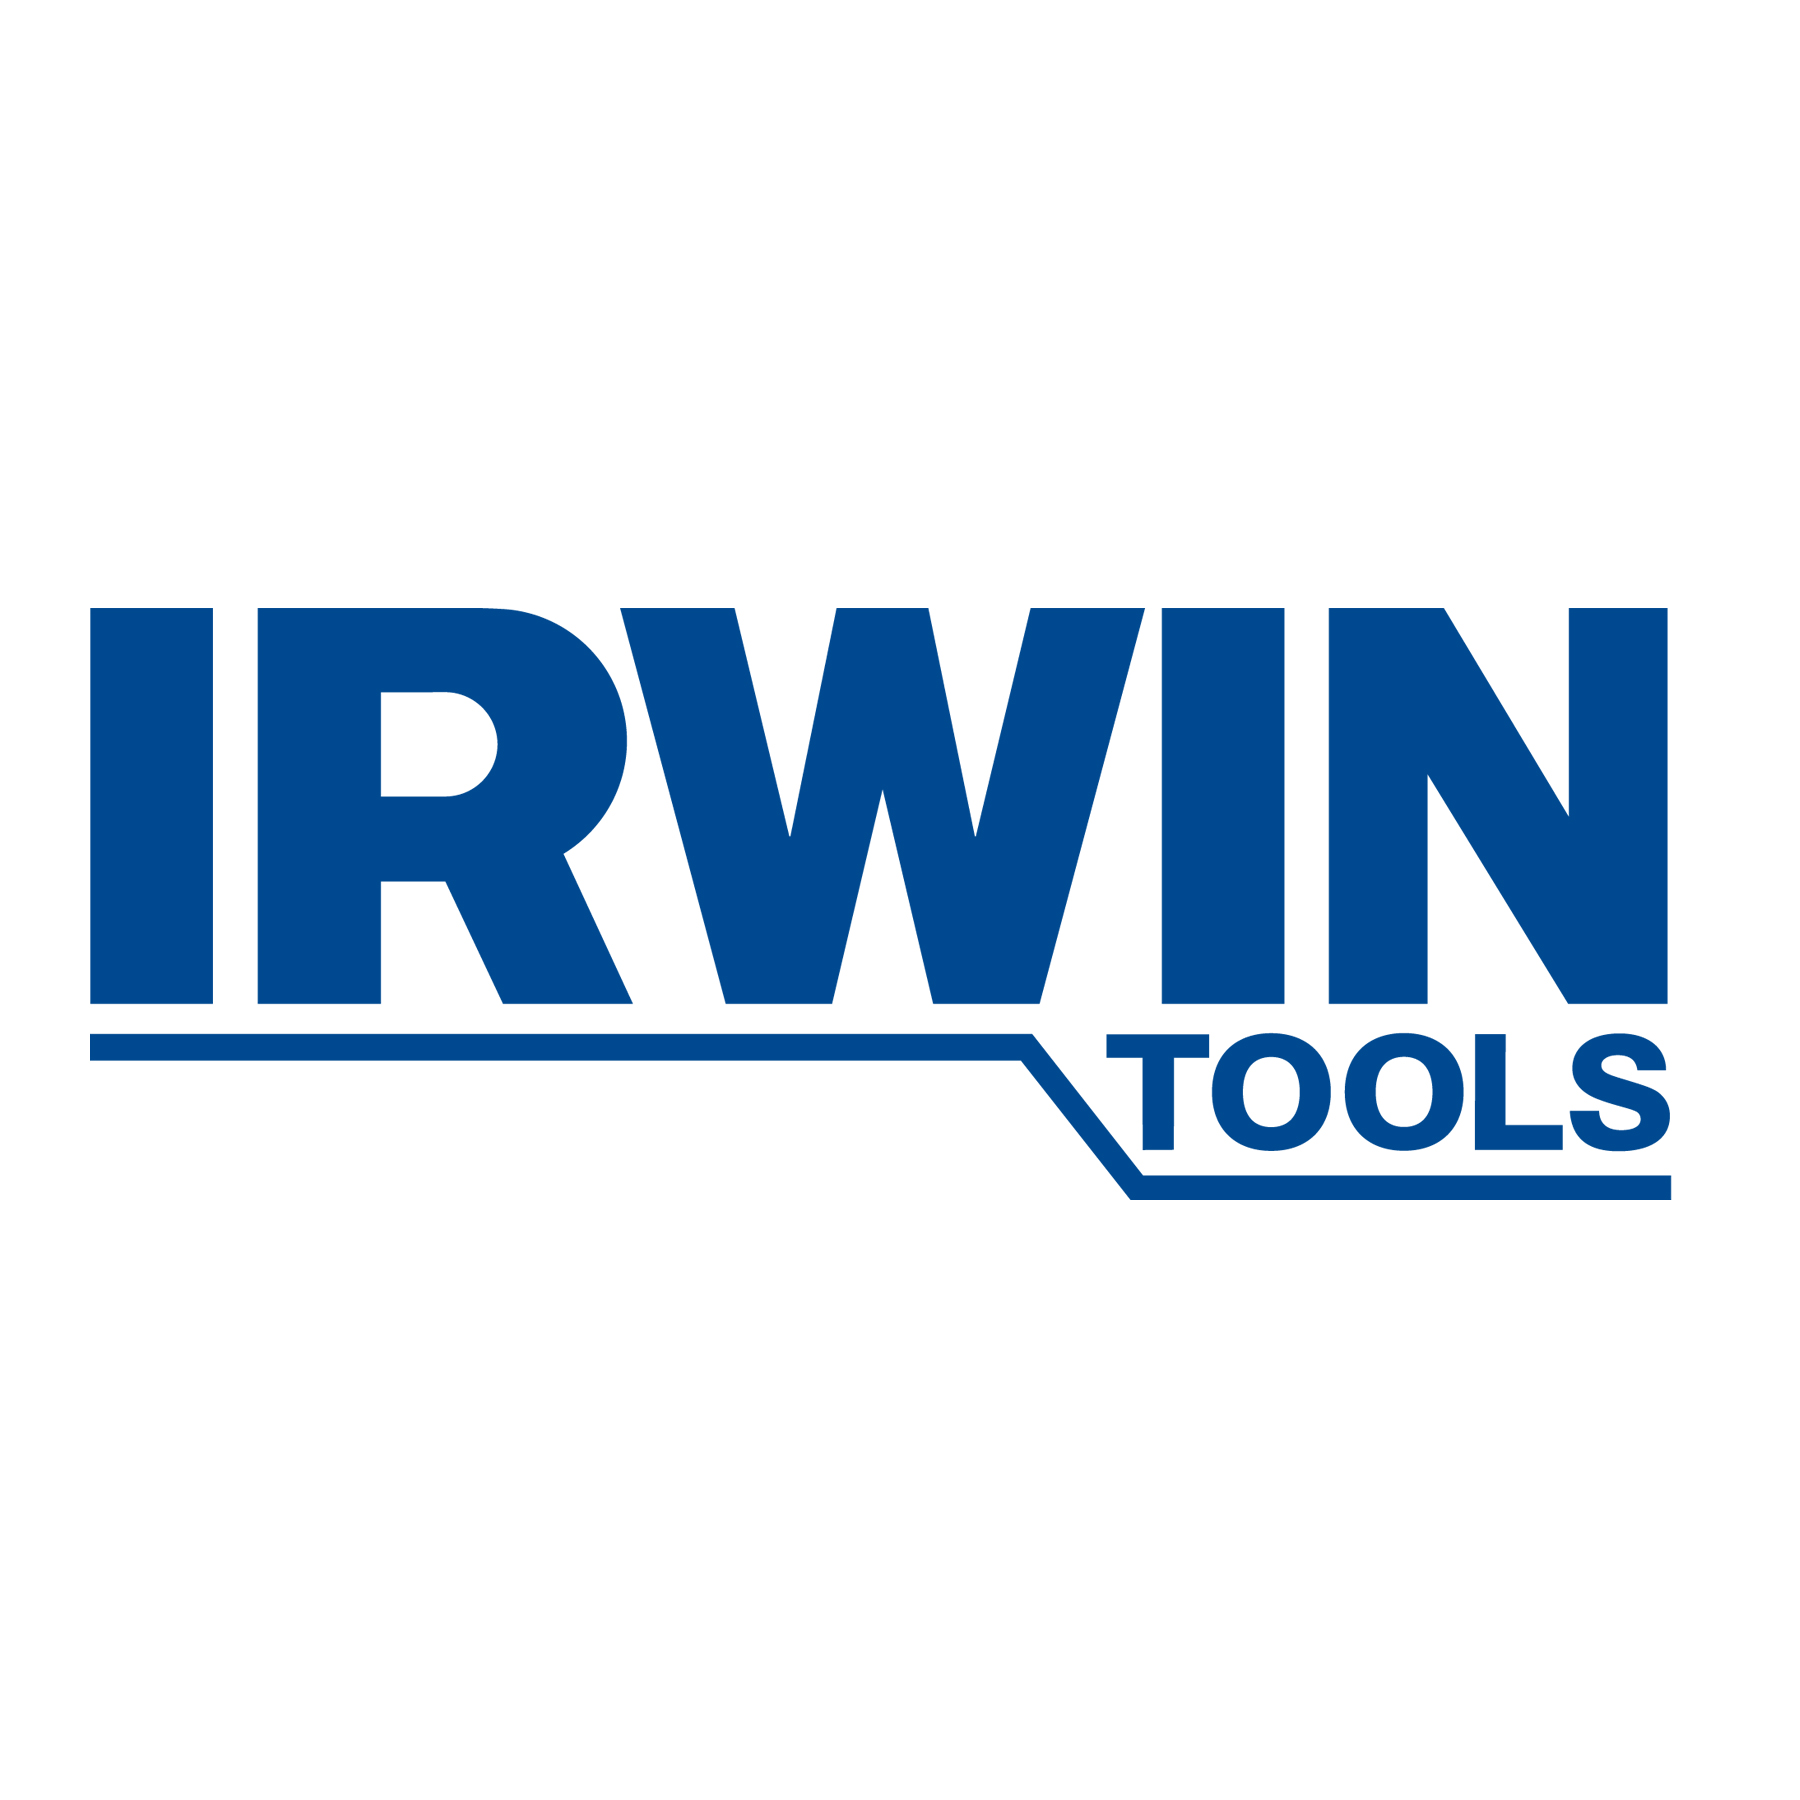 Irwin Record